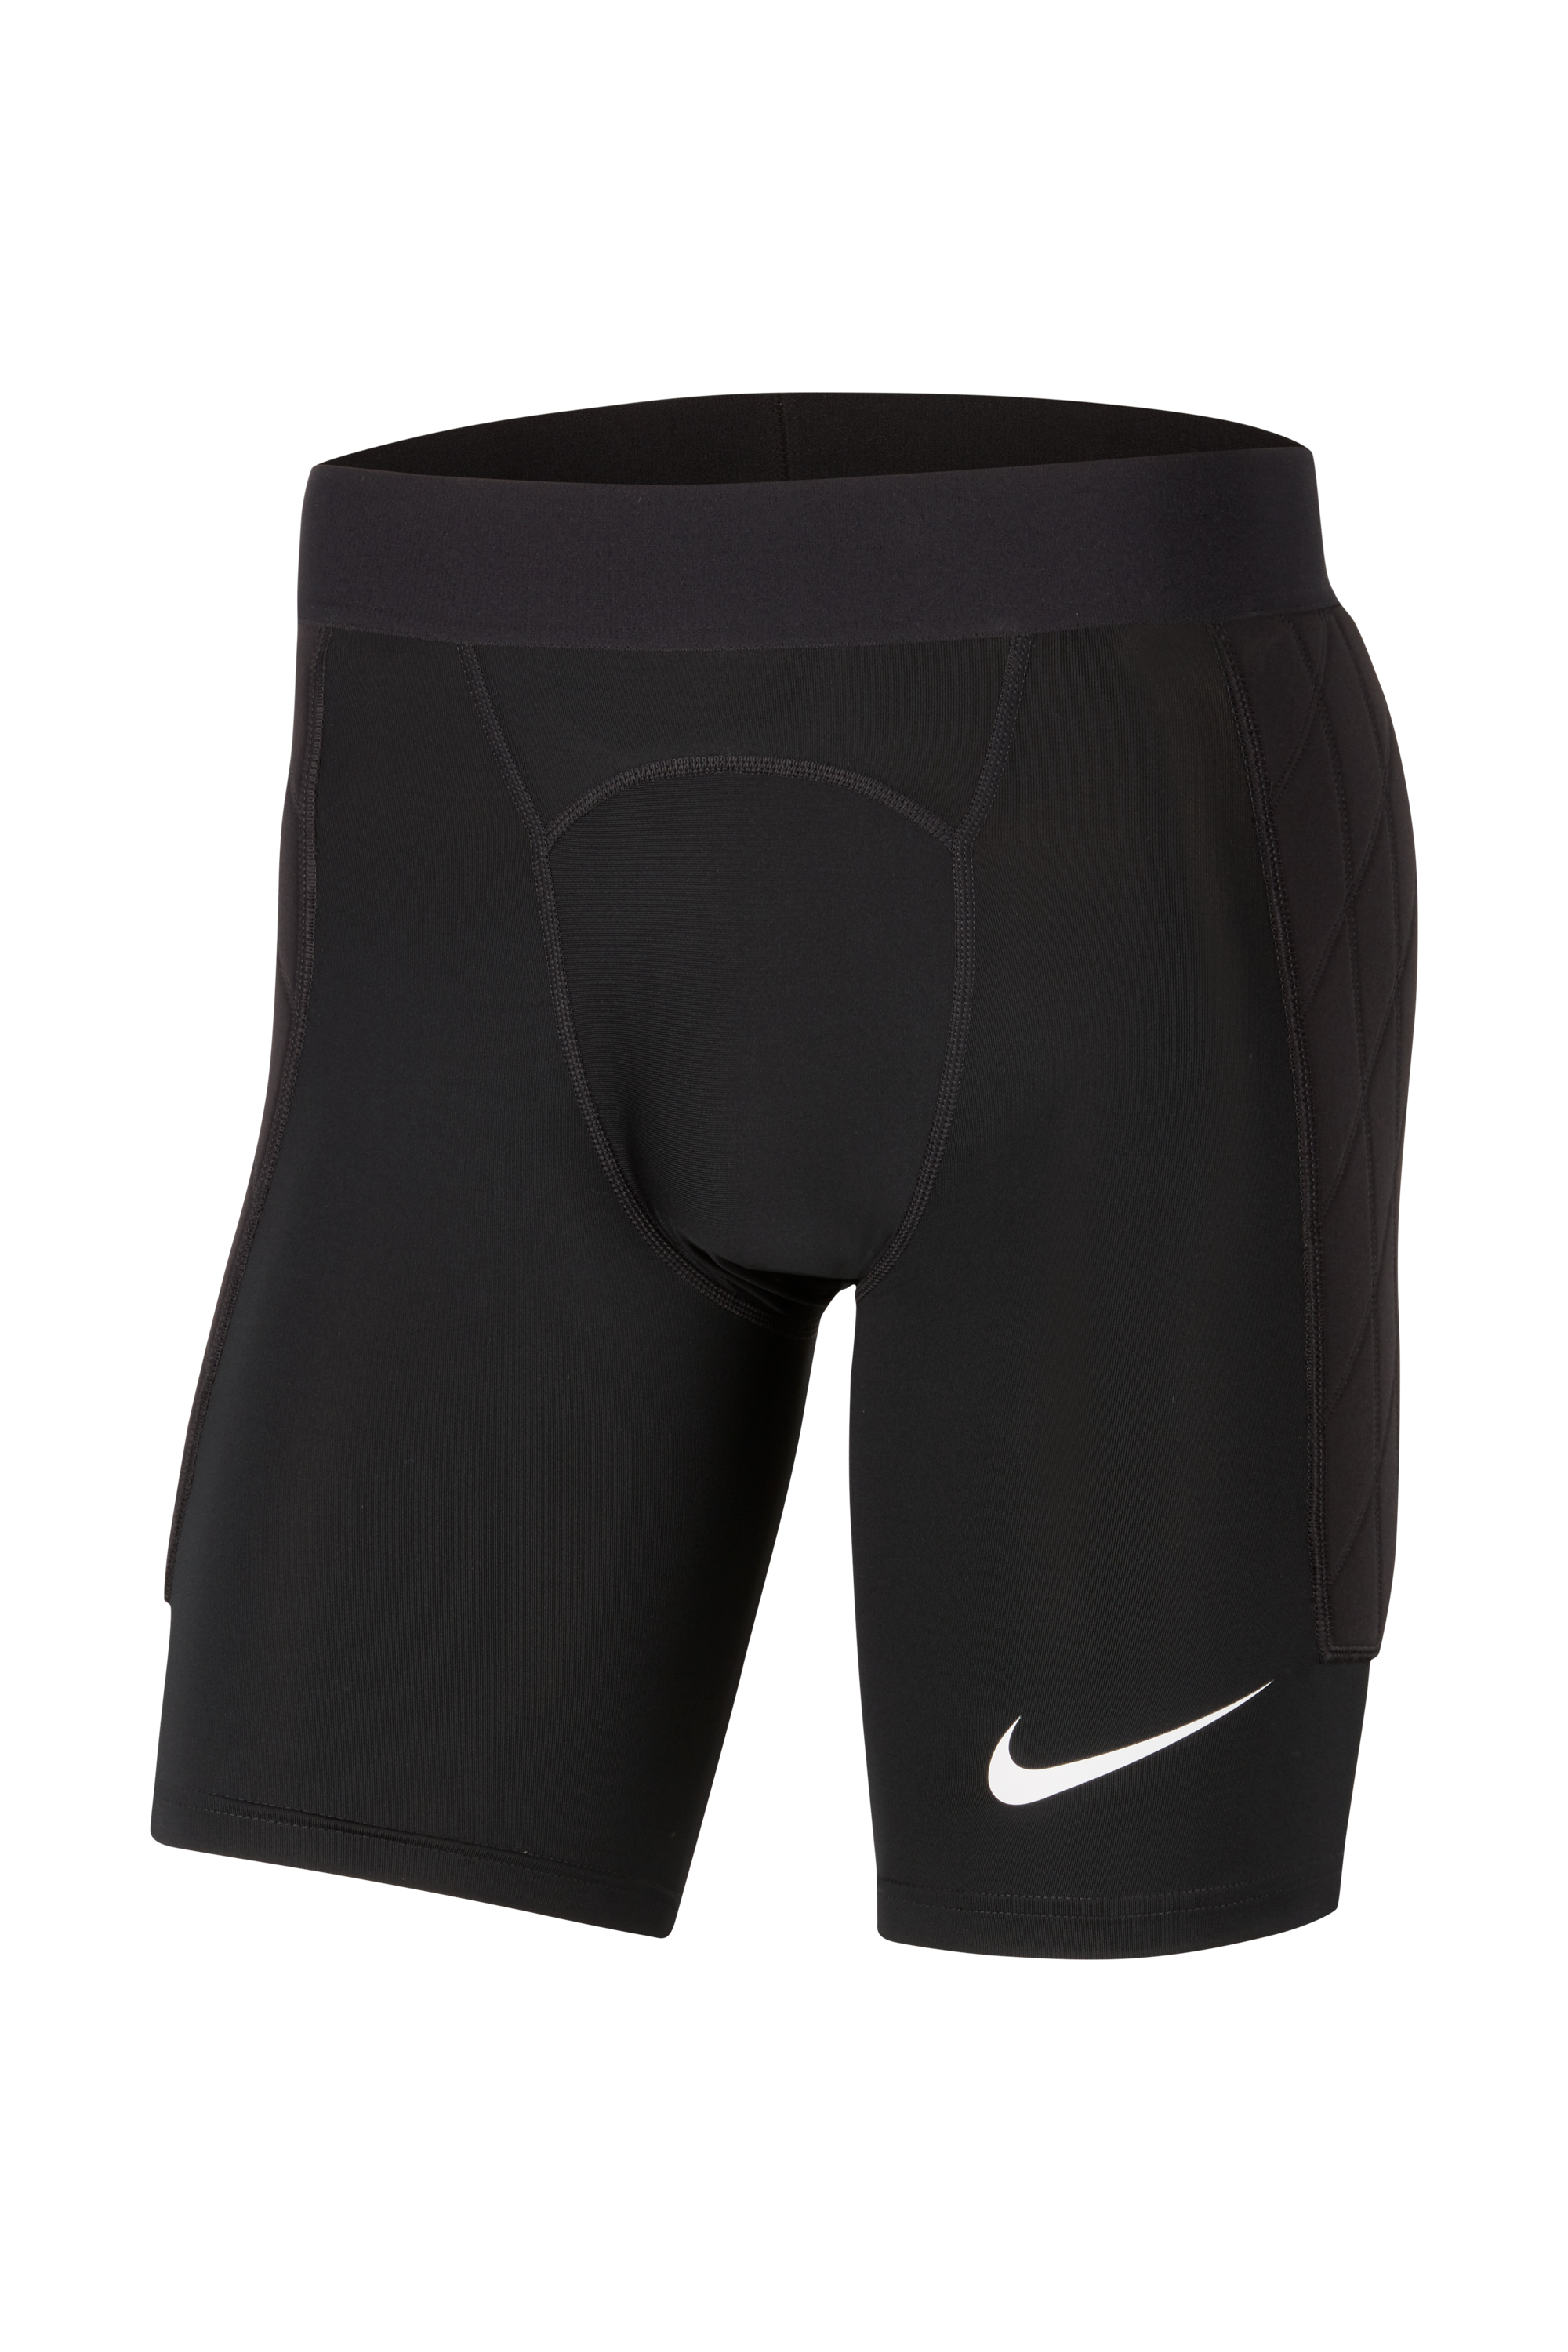 Goalkeeper Shorts Nike Dry Gardien 